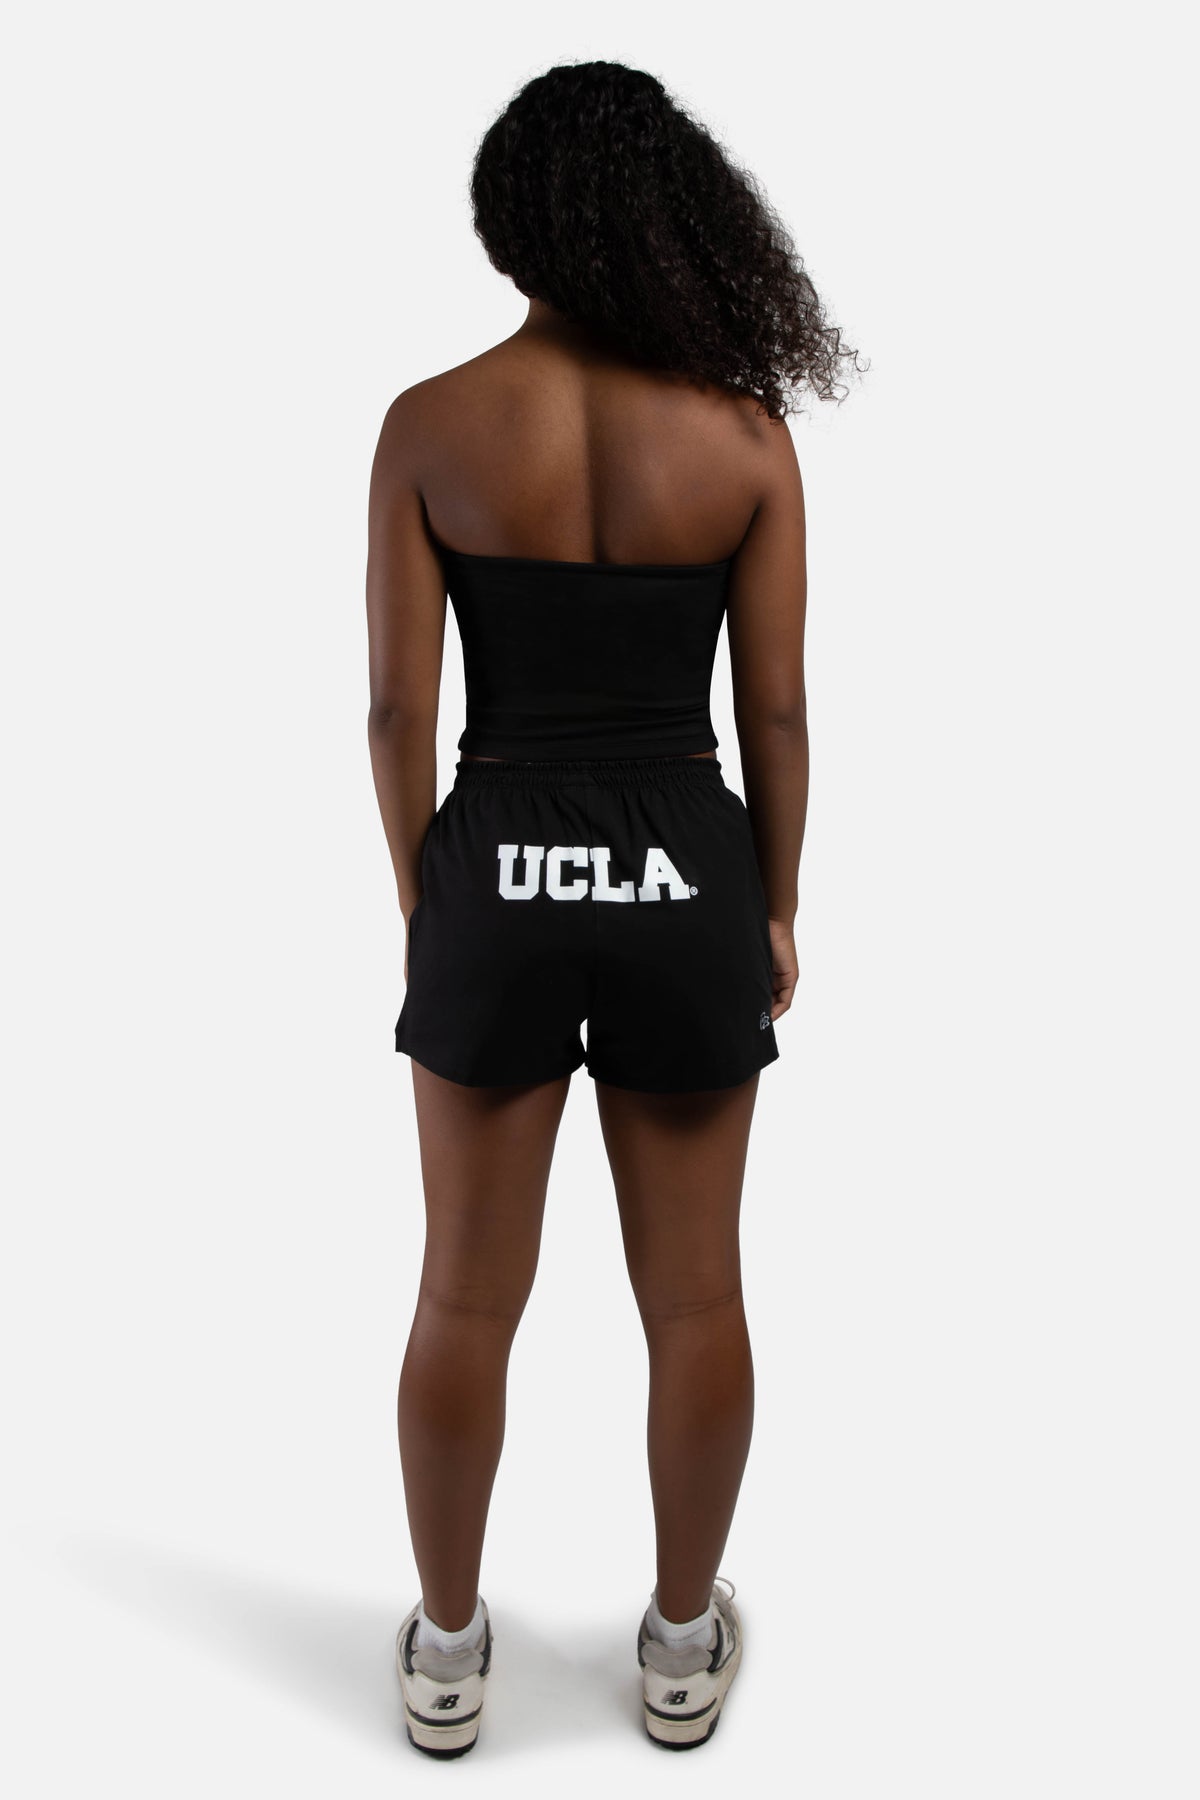 UCLA Soffee Shorts